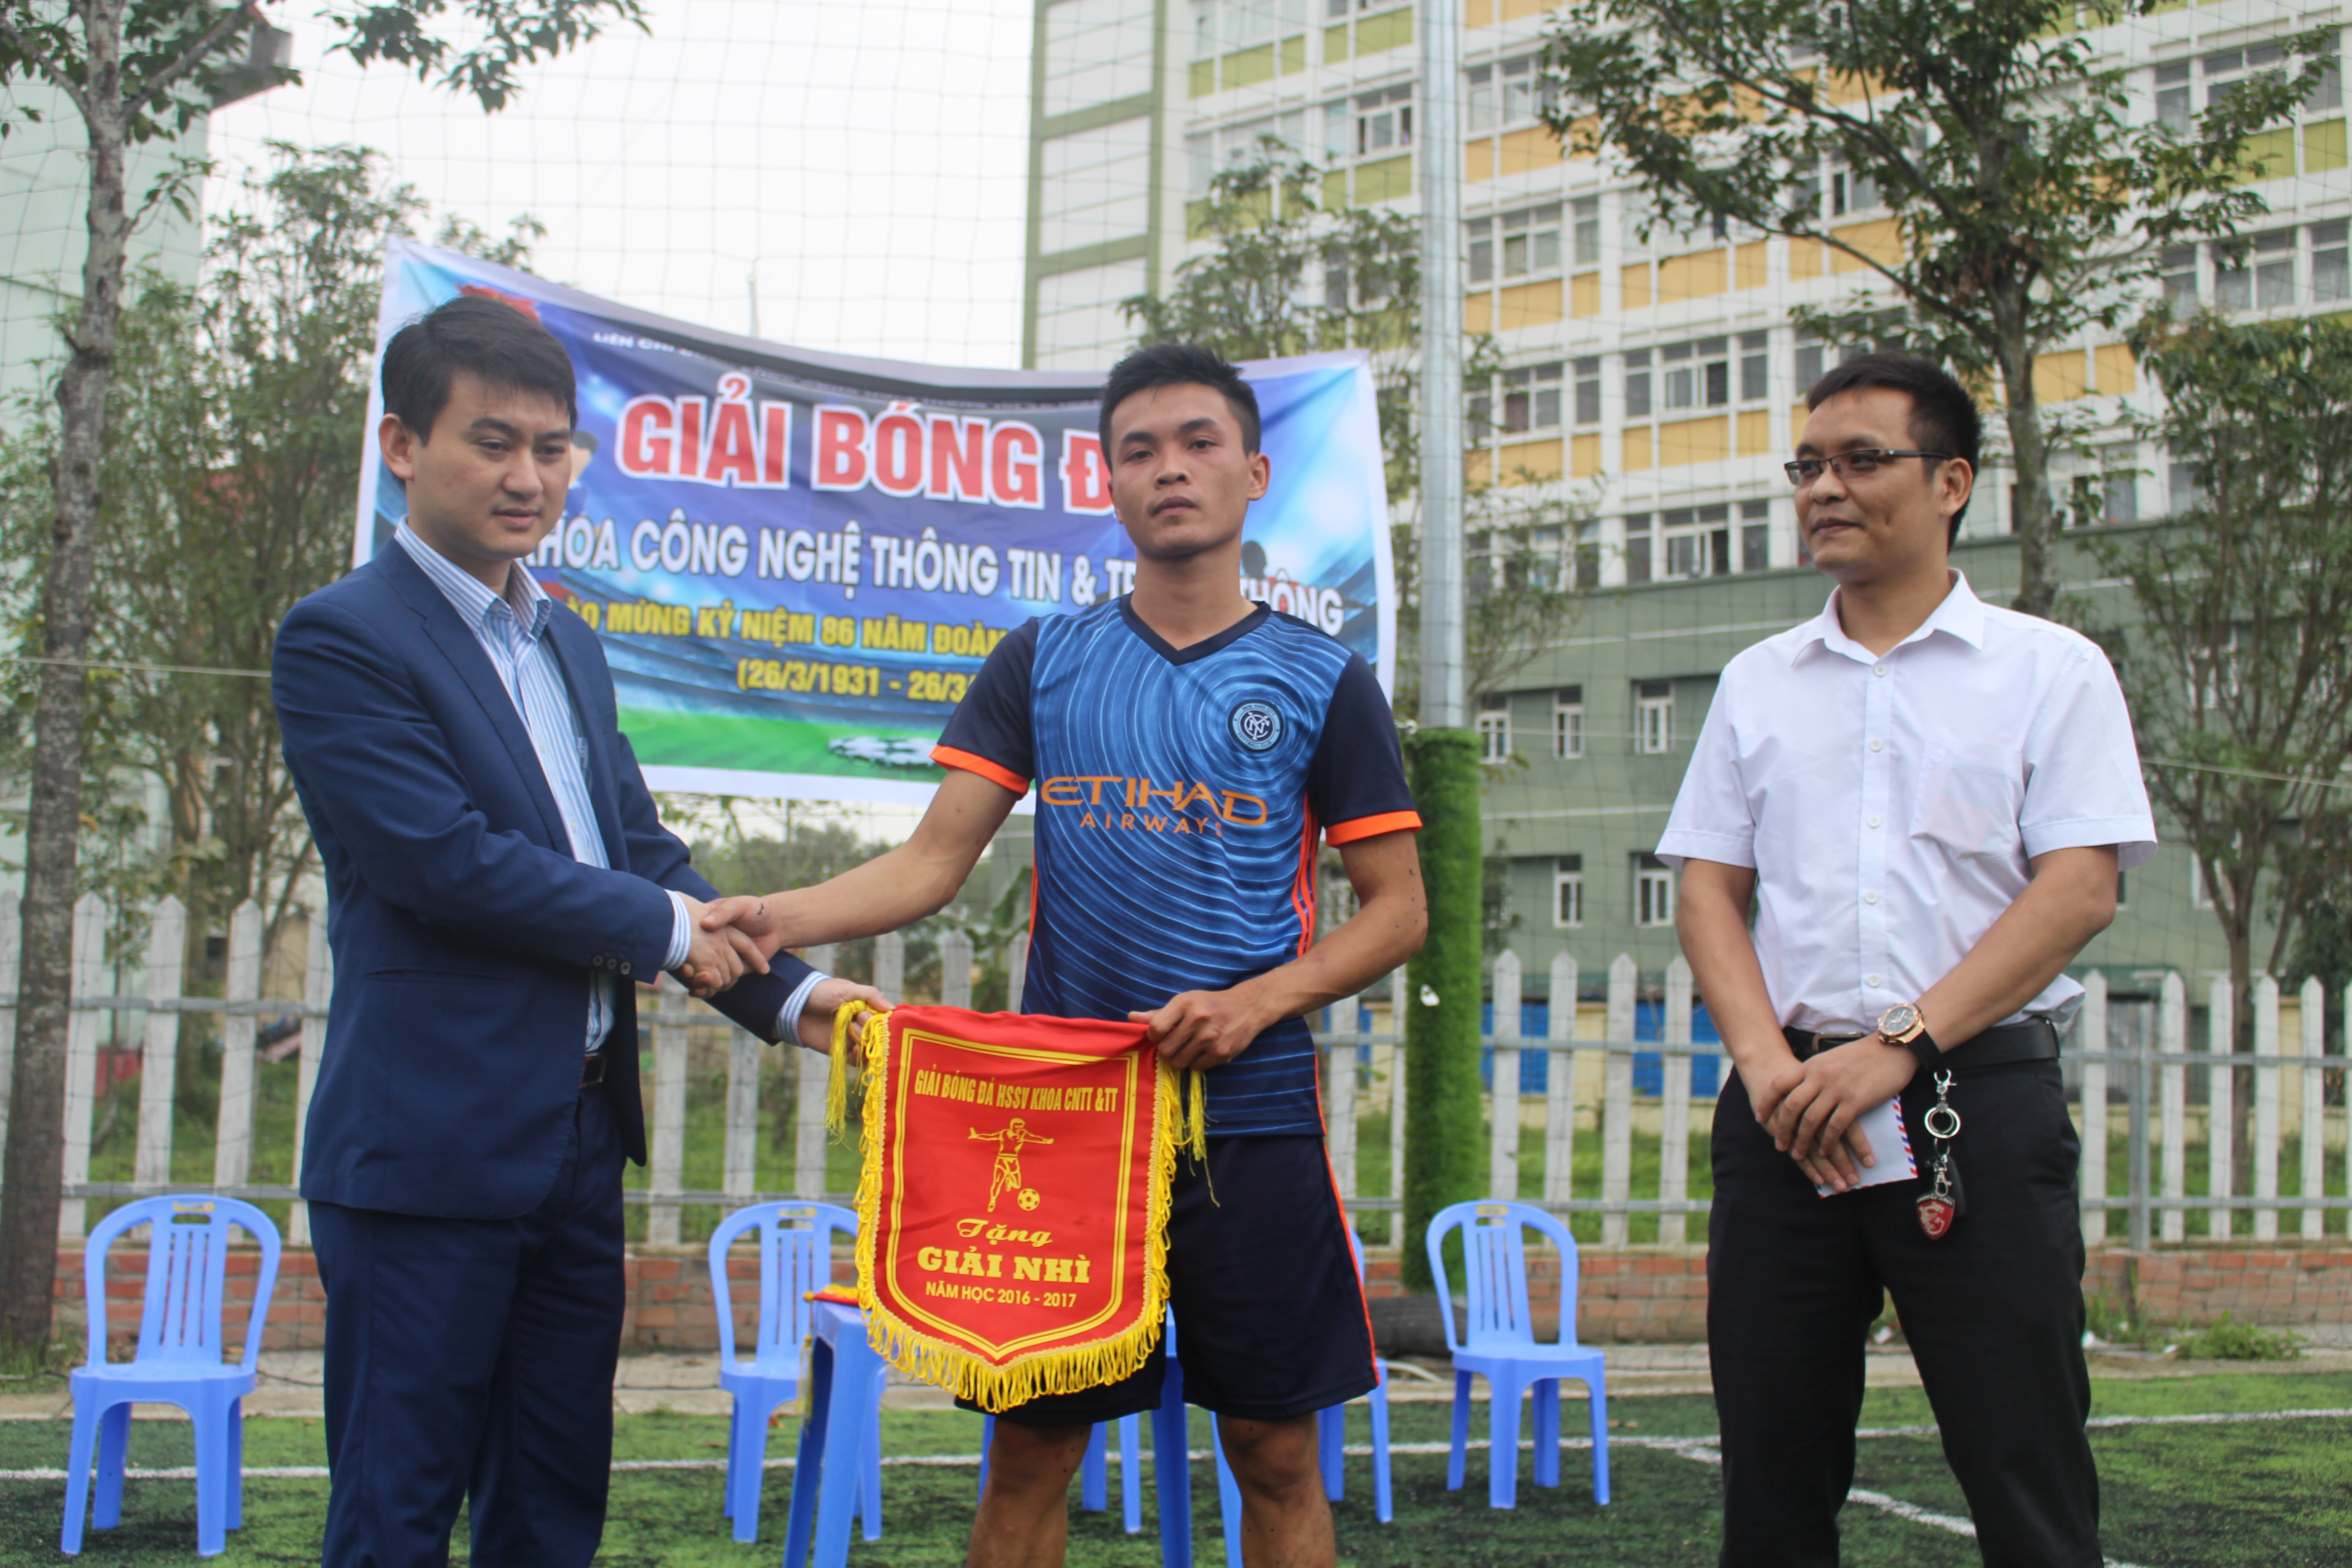 TS Trịnh Viết Cường - P.Trưởng khoa CNTT&TT trao giải thưởng cho các đội bóng